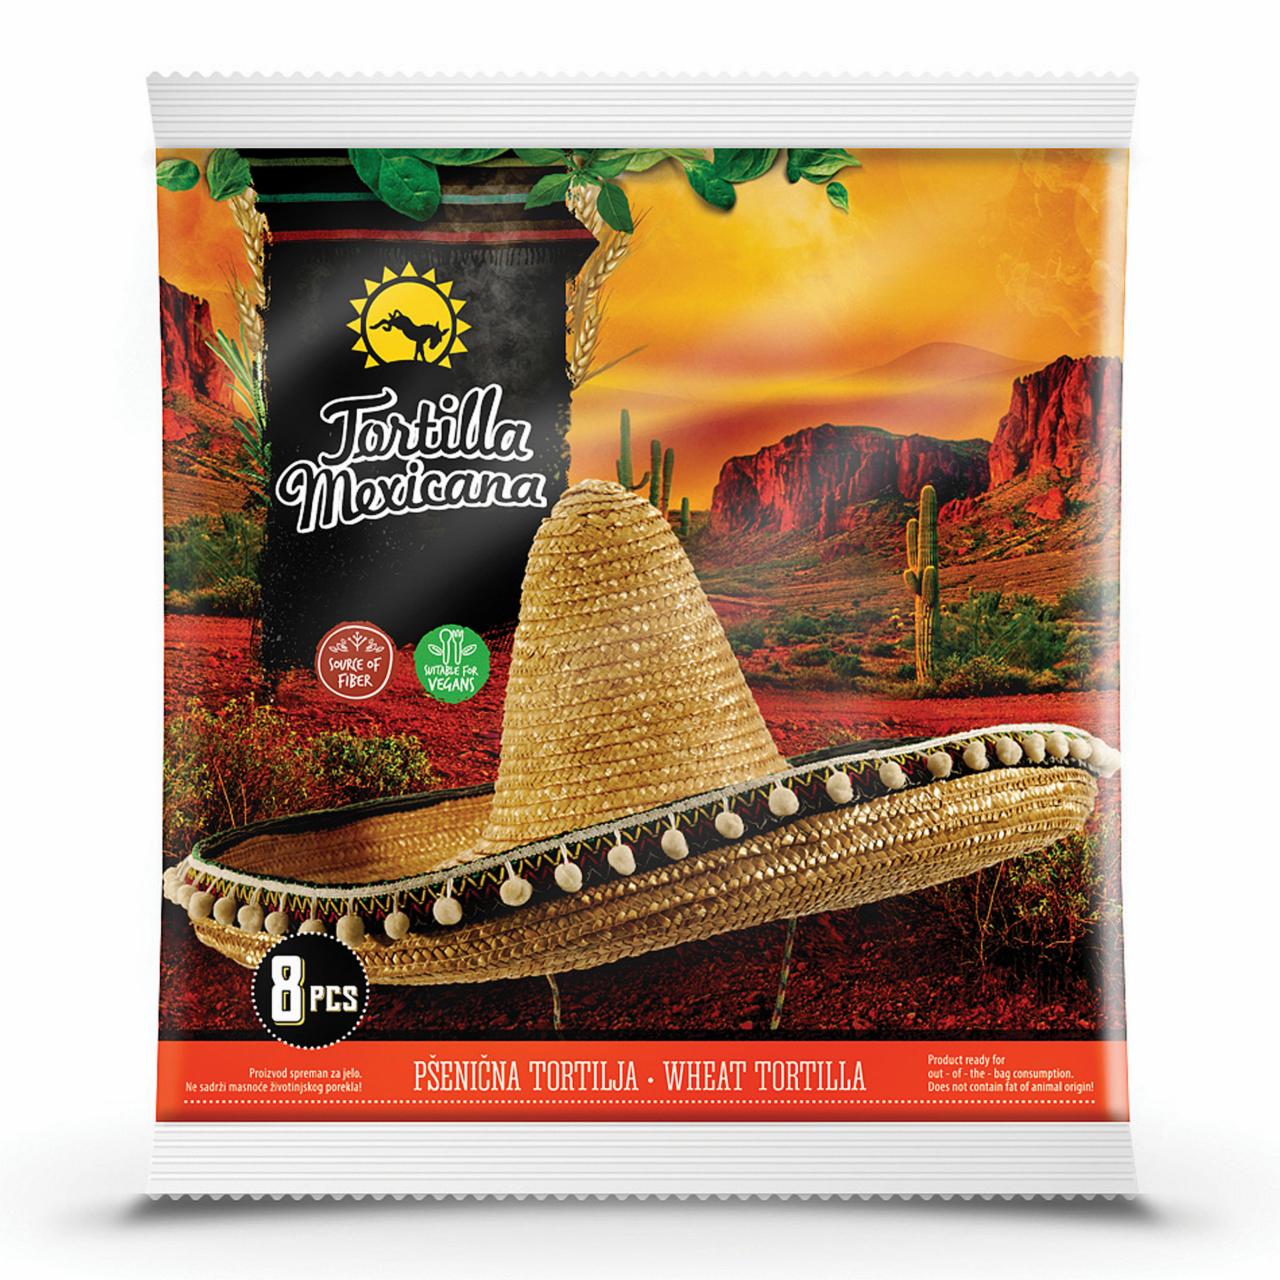 Képek - Tortilla Mexicana lágy tortilla 320 g